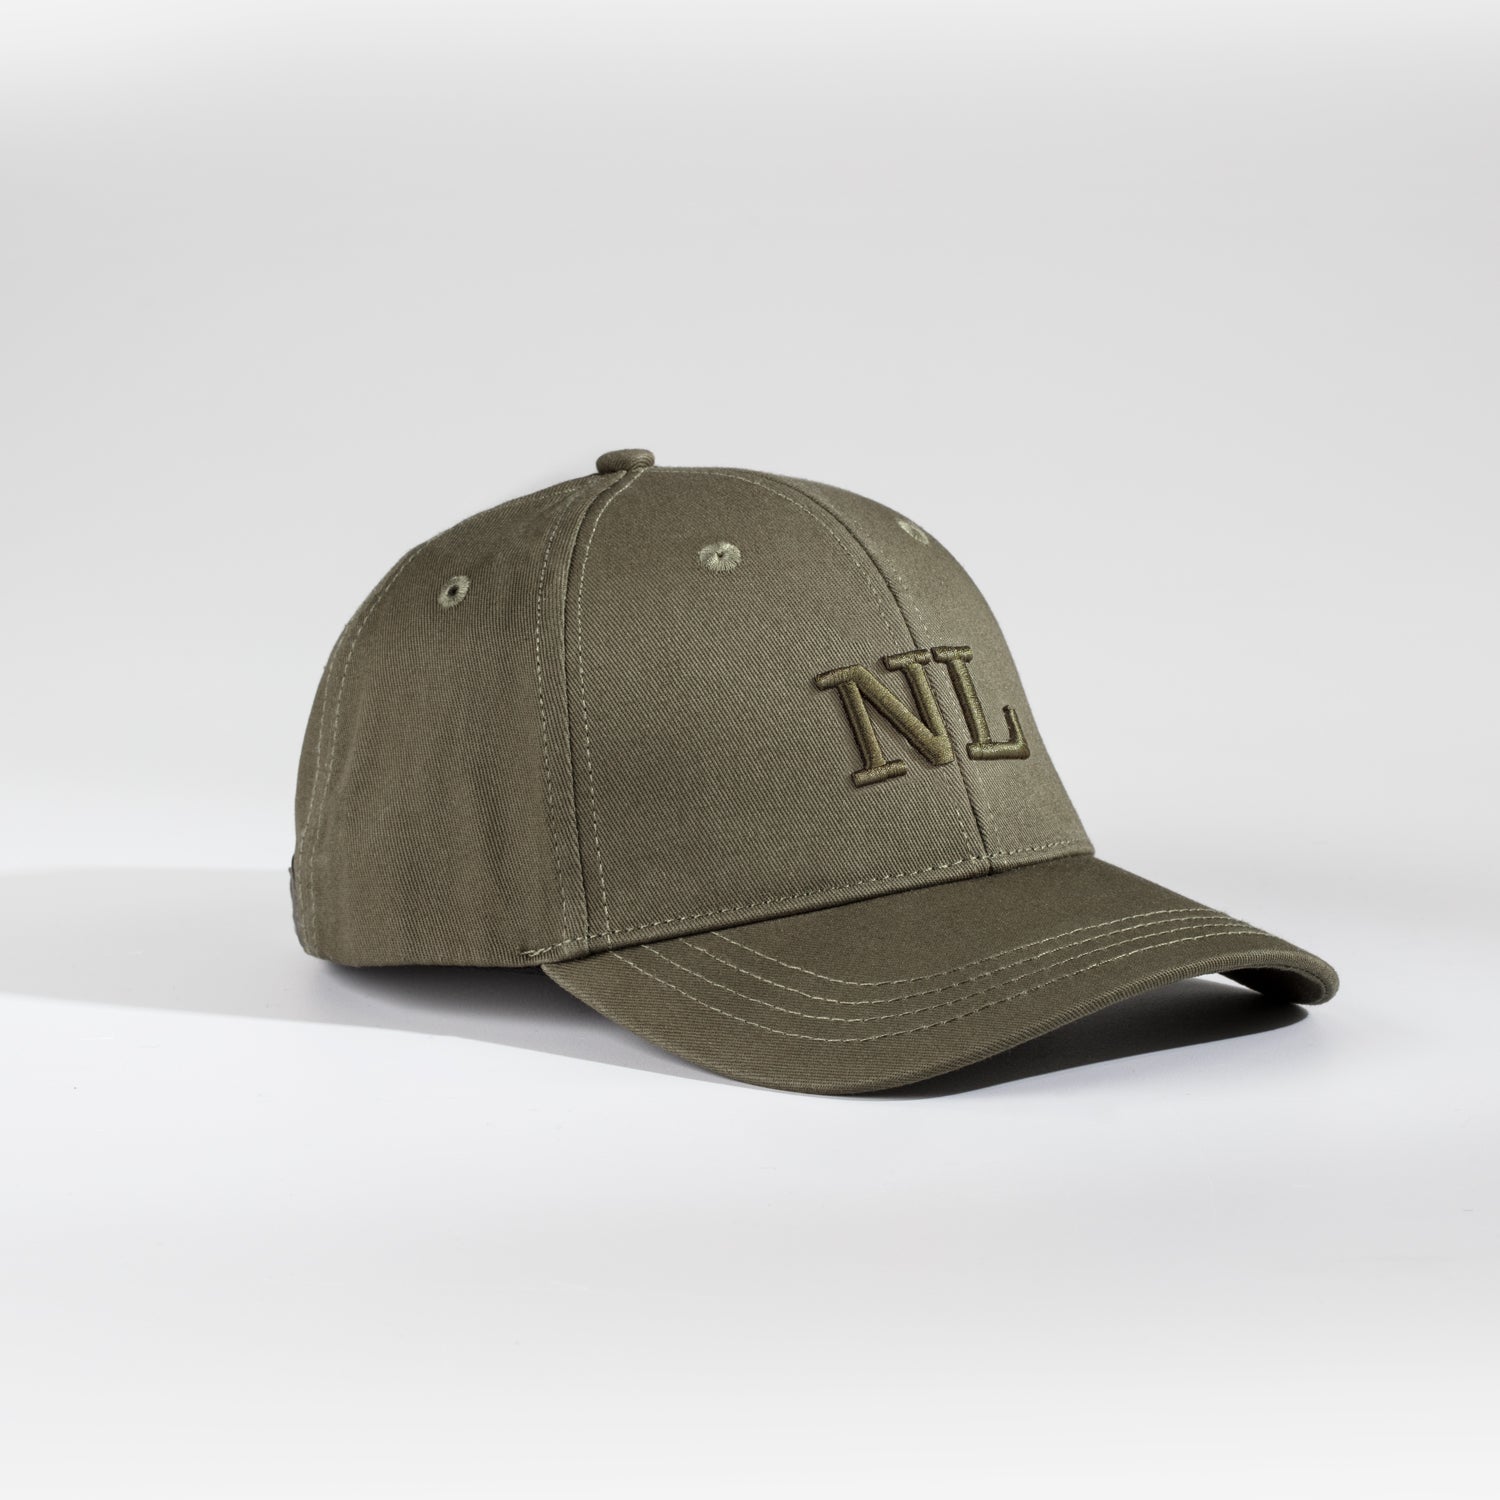 NL Dad cap - Dusty green